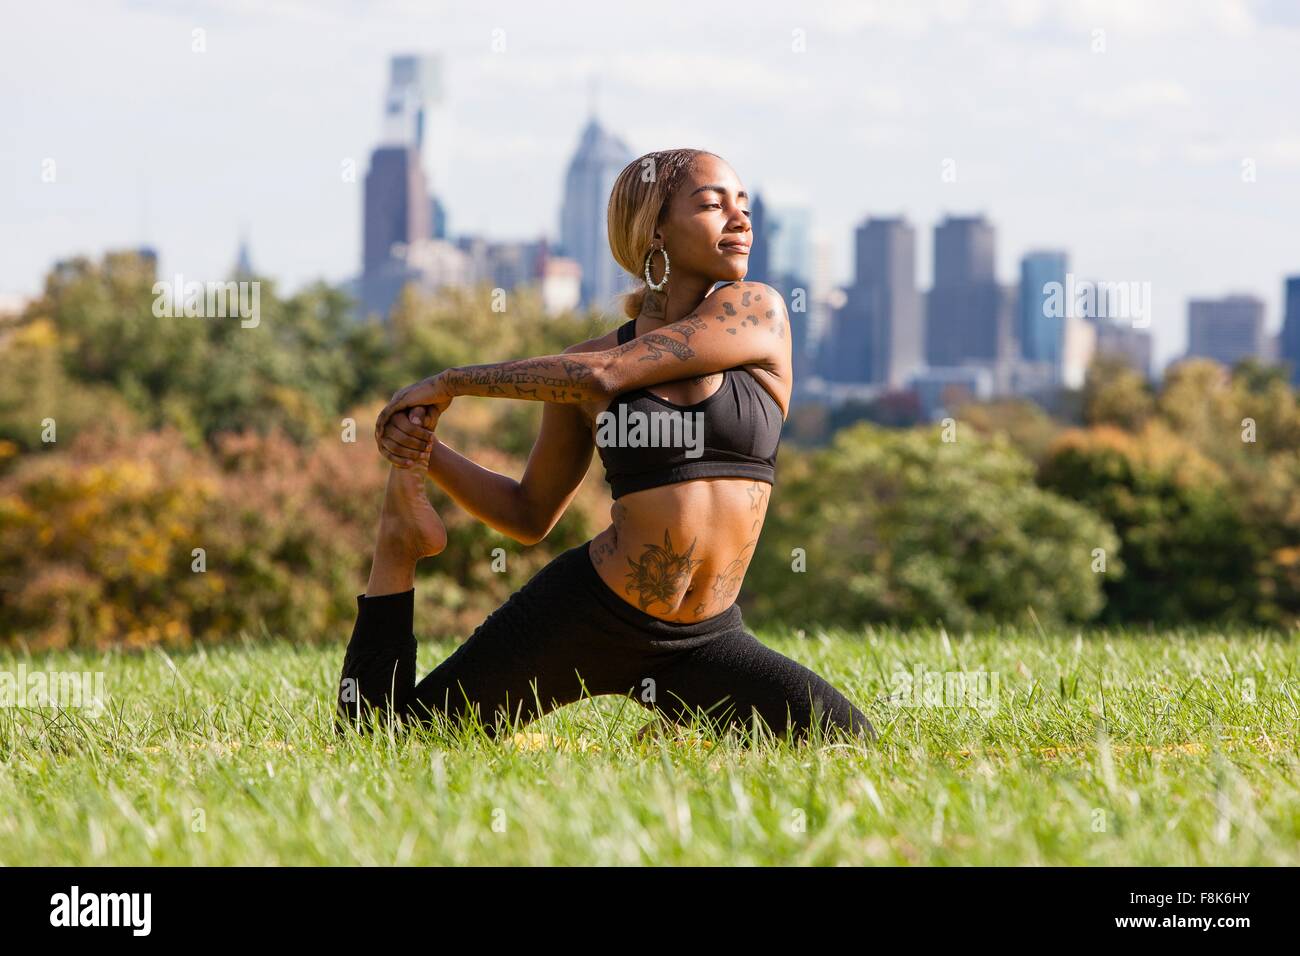 Vista frontale della giovane donna inginocchiata su erba allungamento della gamba in posizione di yoga, guardando lontano, Philadelphia, Pennsylvania, STATI UNITI D'AMERICA Foto Stock